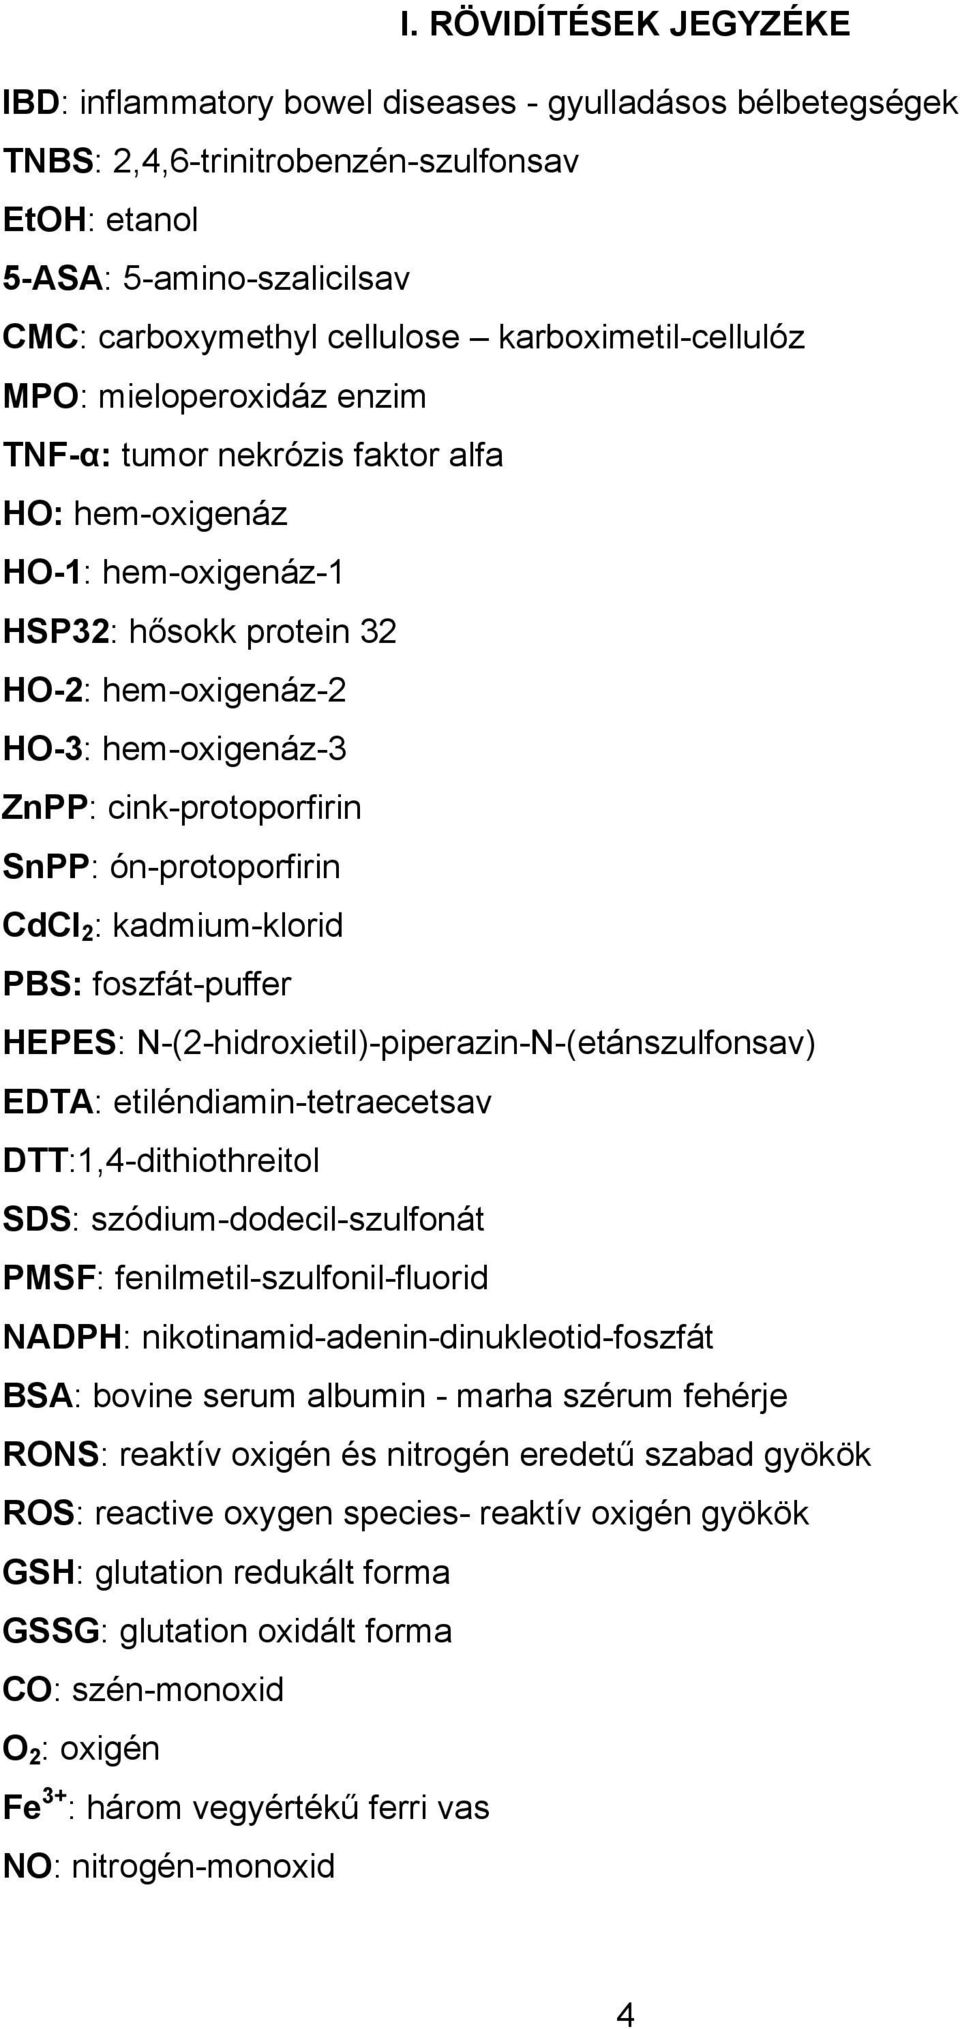 cink-protoporfirin SnPP: ón-protoporfirin CdCl 2 : kadmium-klorid PBS: foszfát-puffer HEPES: N-(2-hidroxietil)-piperazin-N-(etánszulfonsav) EDTA: etiléndiamin-tetraecetsav DTT:1,4-dithiothreitol SDS: